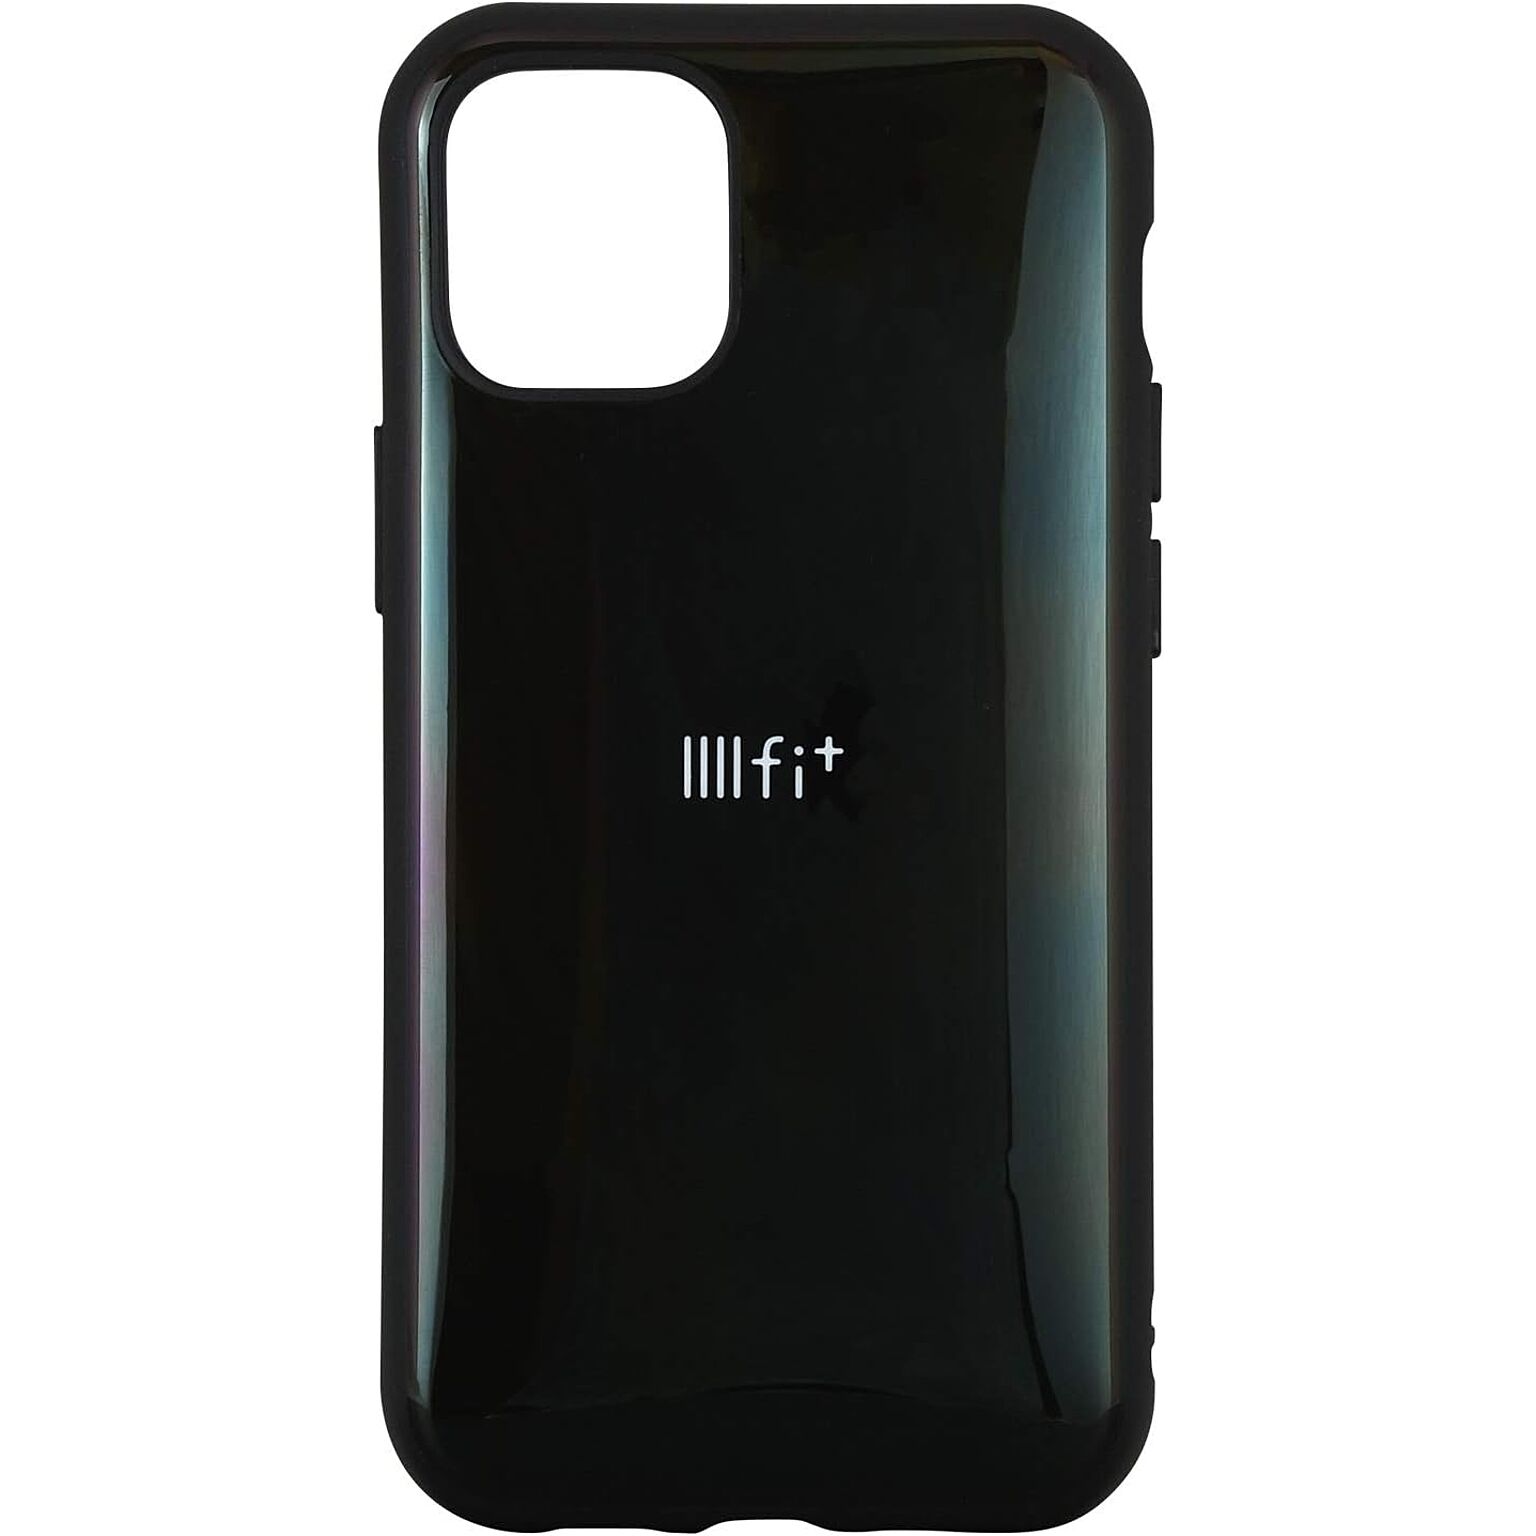 グルマンディーズ IIIIfit iPhone12 mini(5.4インチ)対応ケース ブラック IFT-66BK